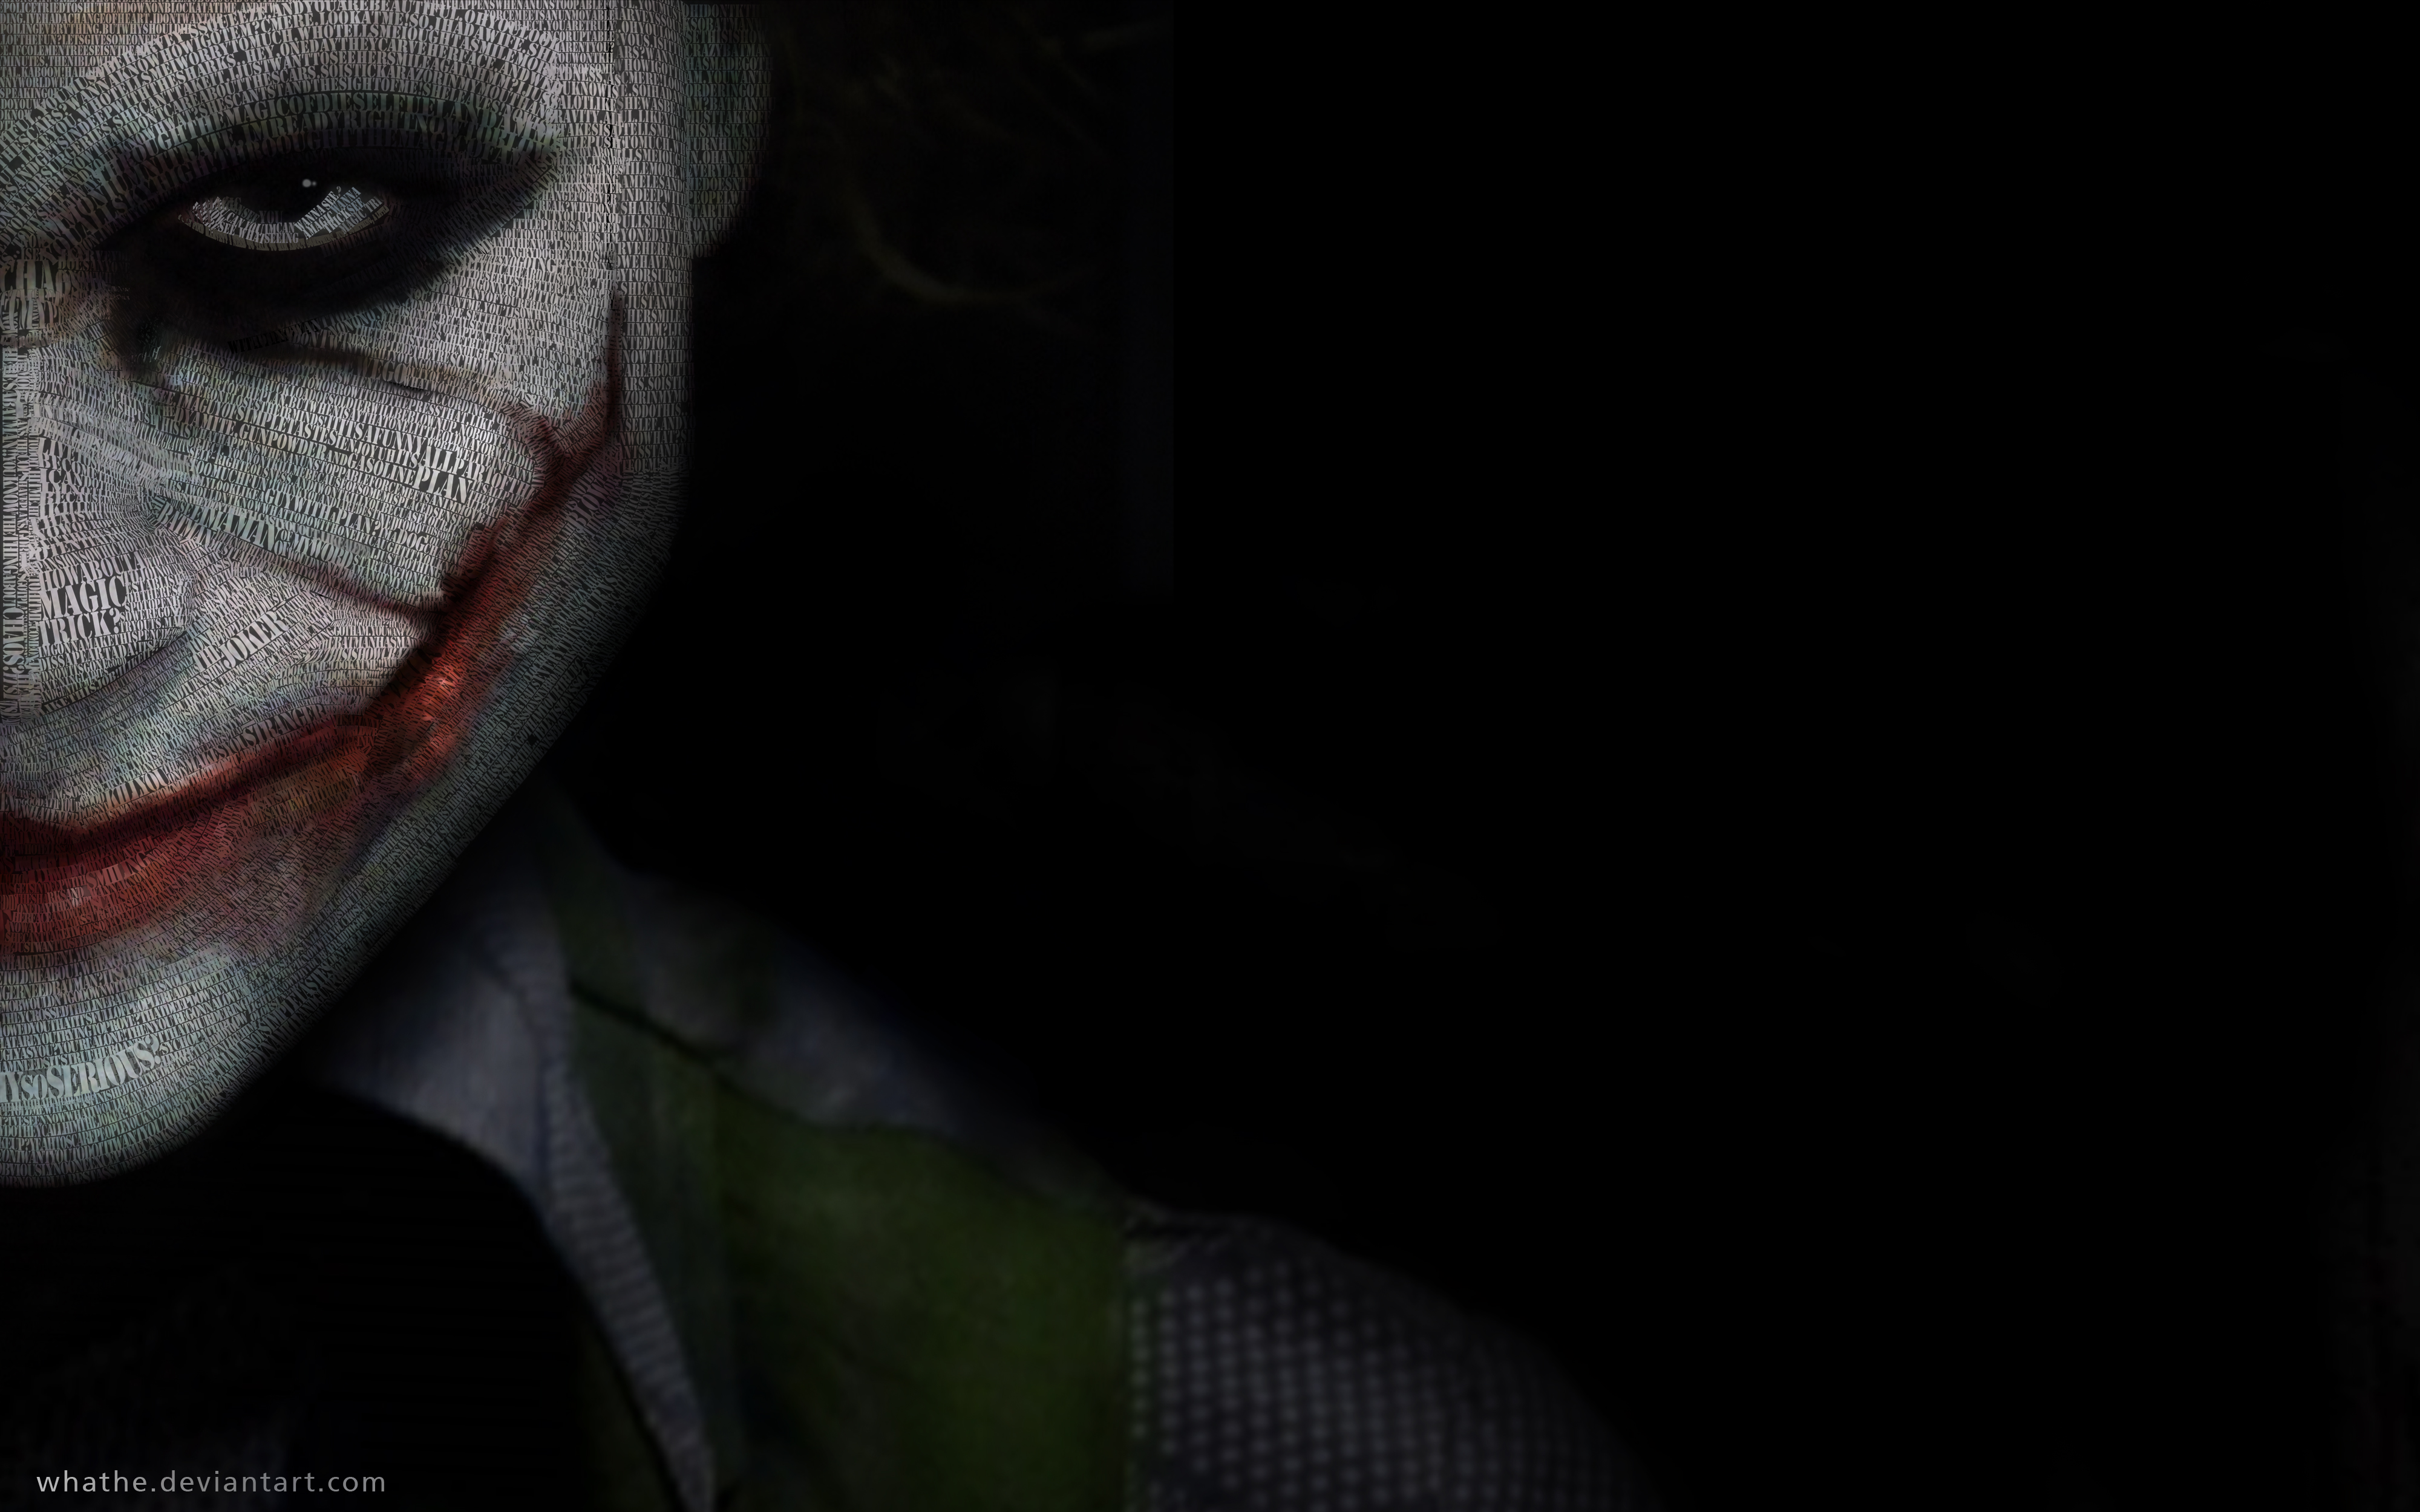 Dark Knight Joker In 4K Ultra Hd Wallpapers